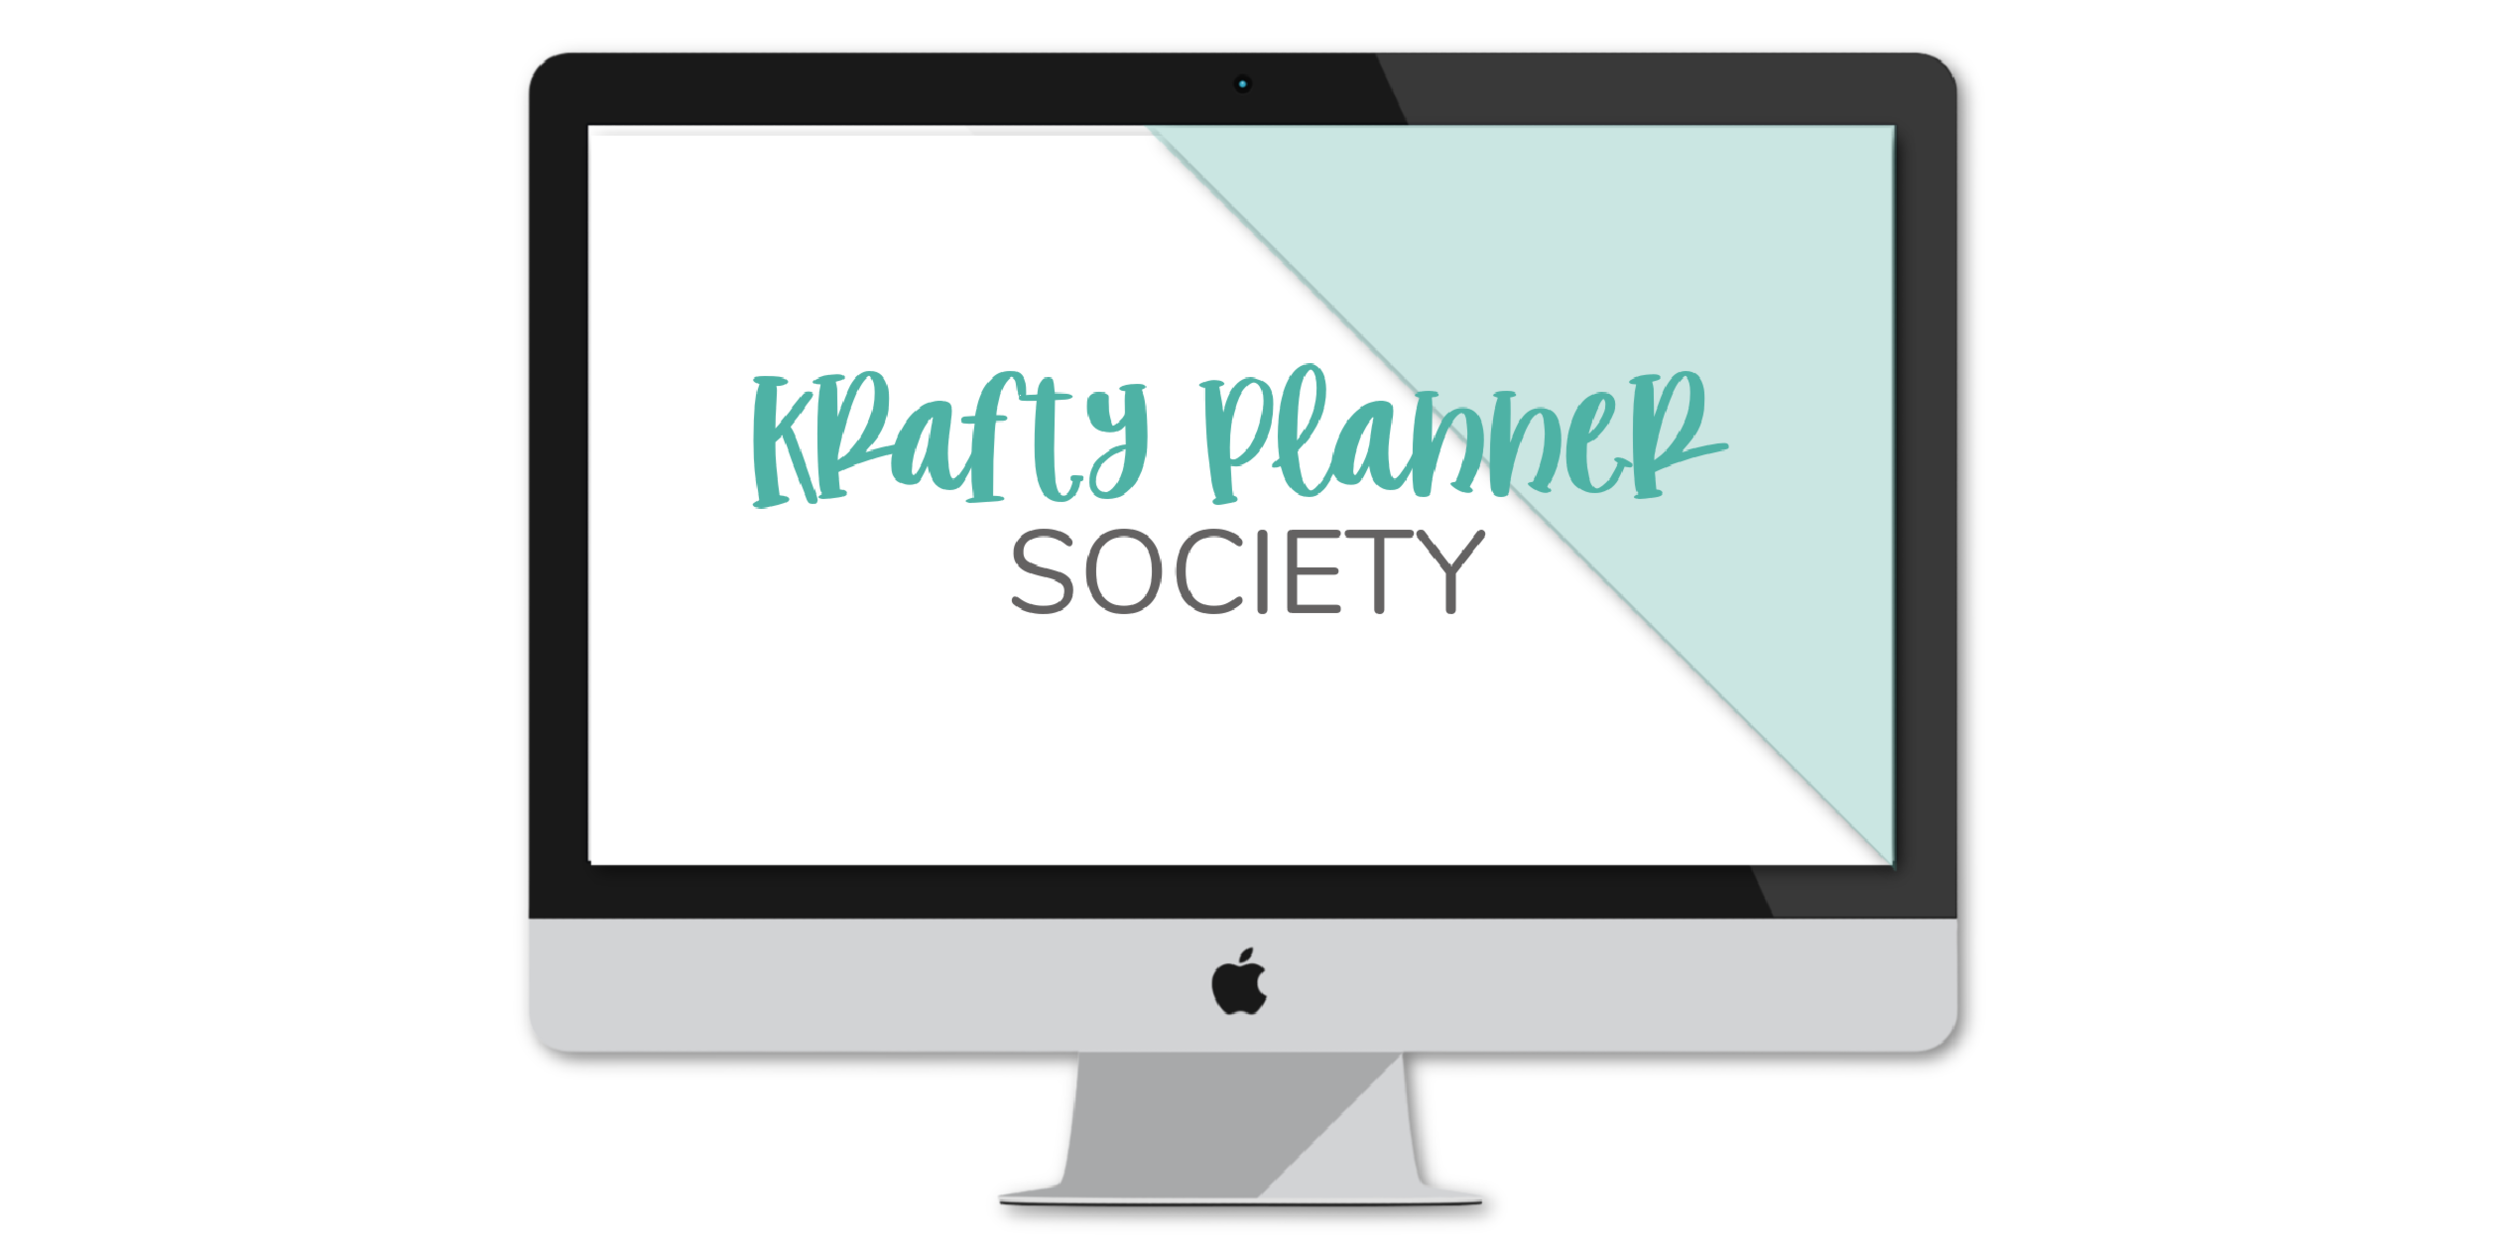 The Krafty Planner Society